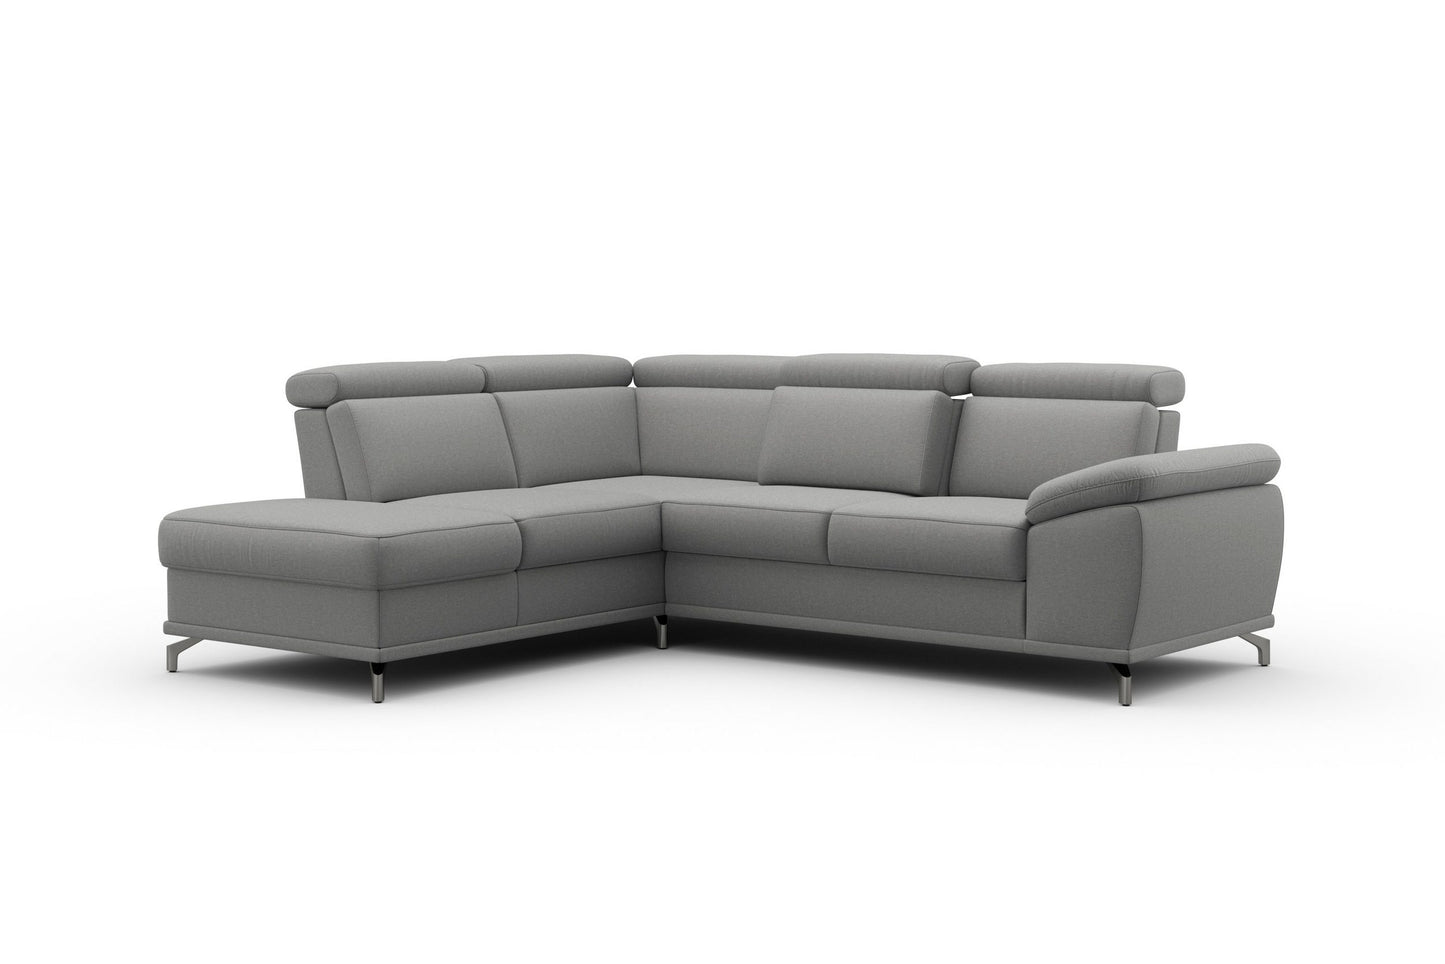 Ecksofa Cabrio in Grau mit Federkern, Sitztiefenverstellung in pflegeleichtem Luxus-Micrfaser Bezug, Couch reduziert kaufen.